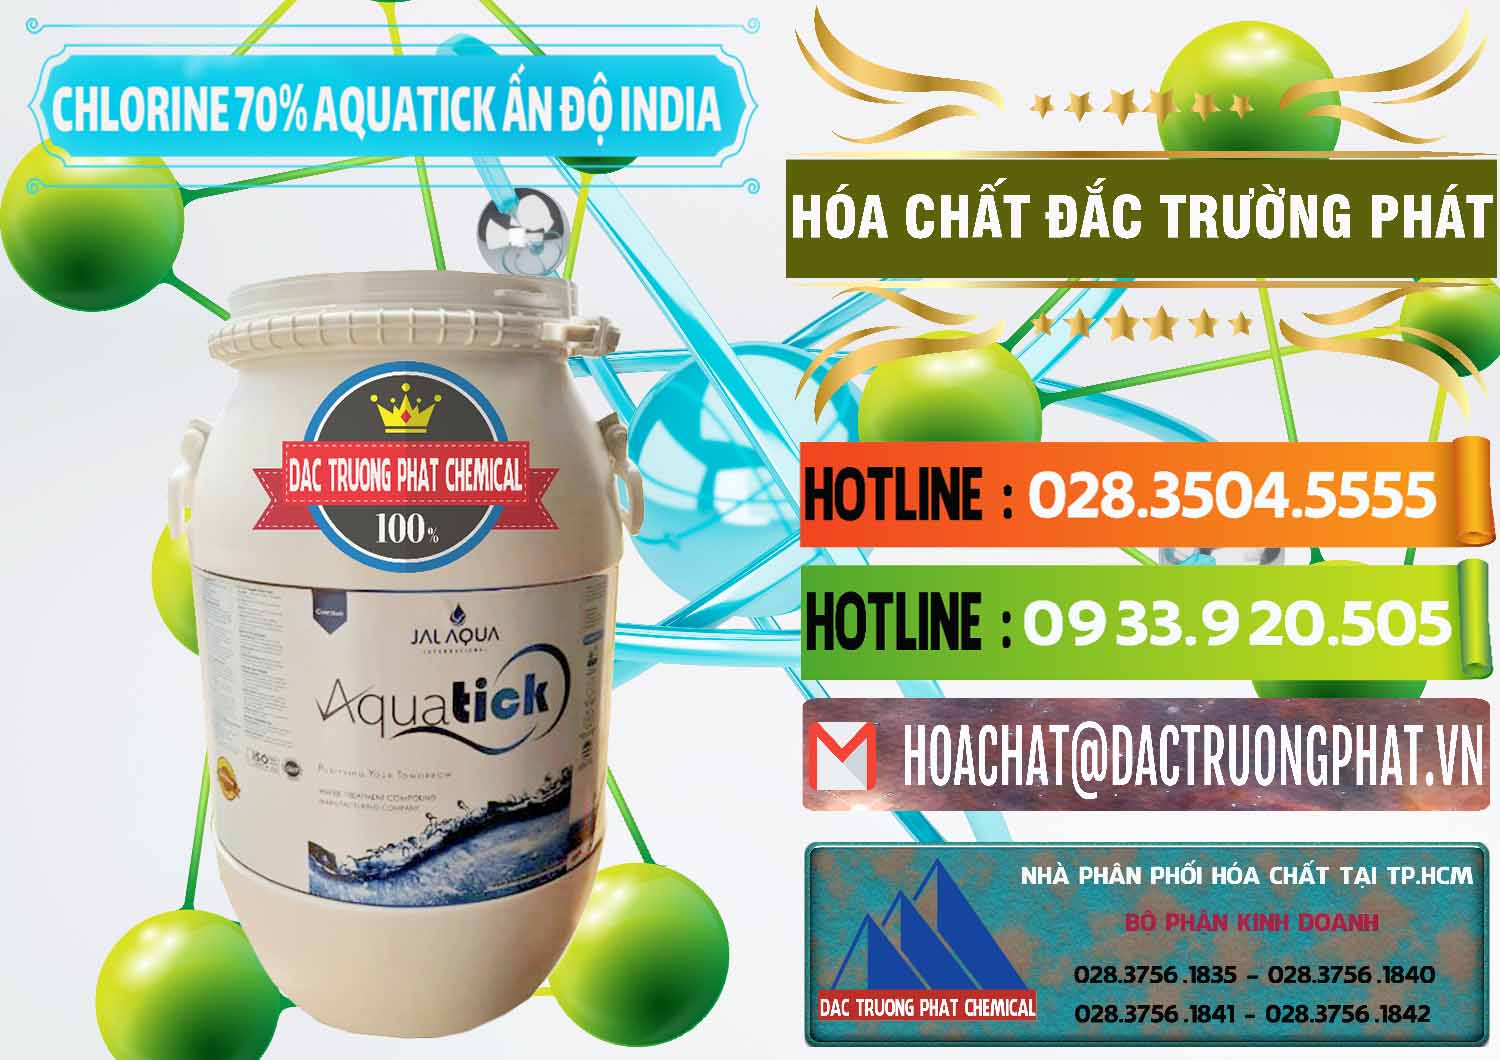 Đơn vị chuyên bán _ phân phối Chlorine – Clorin 70% Aquatick Jal Aqua Ấn Độ India - 0215 - Đơn vị chuyên kinh doanh ( phân phối ) hóa chất tại TP.HCM - cungcaphoachat.com.vn